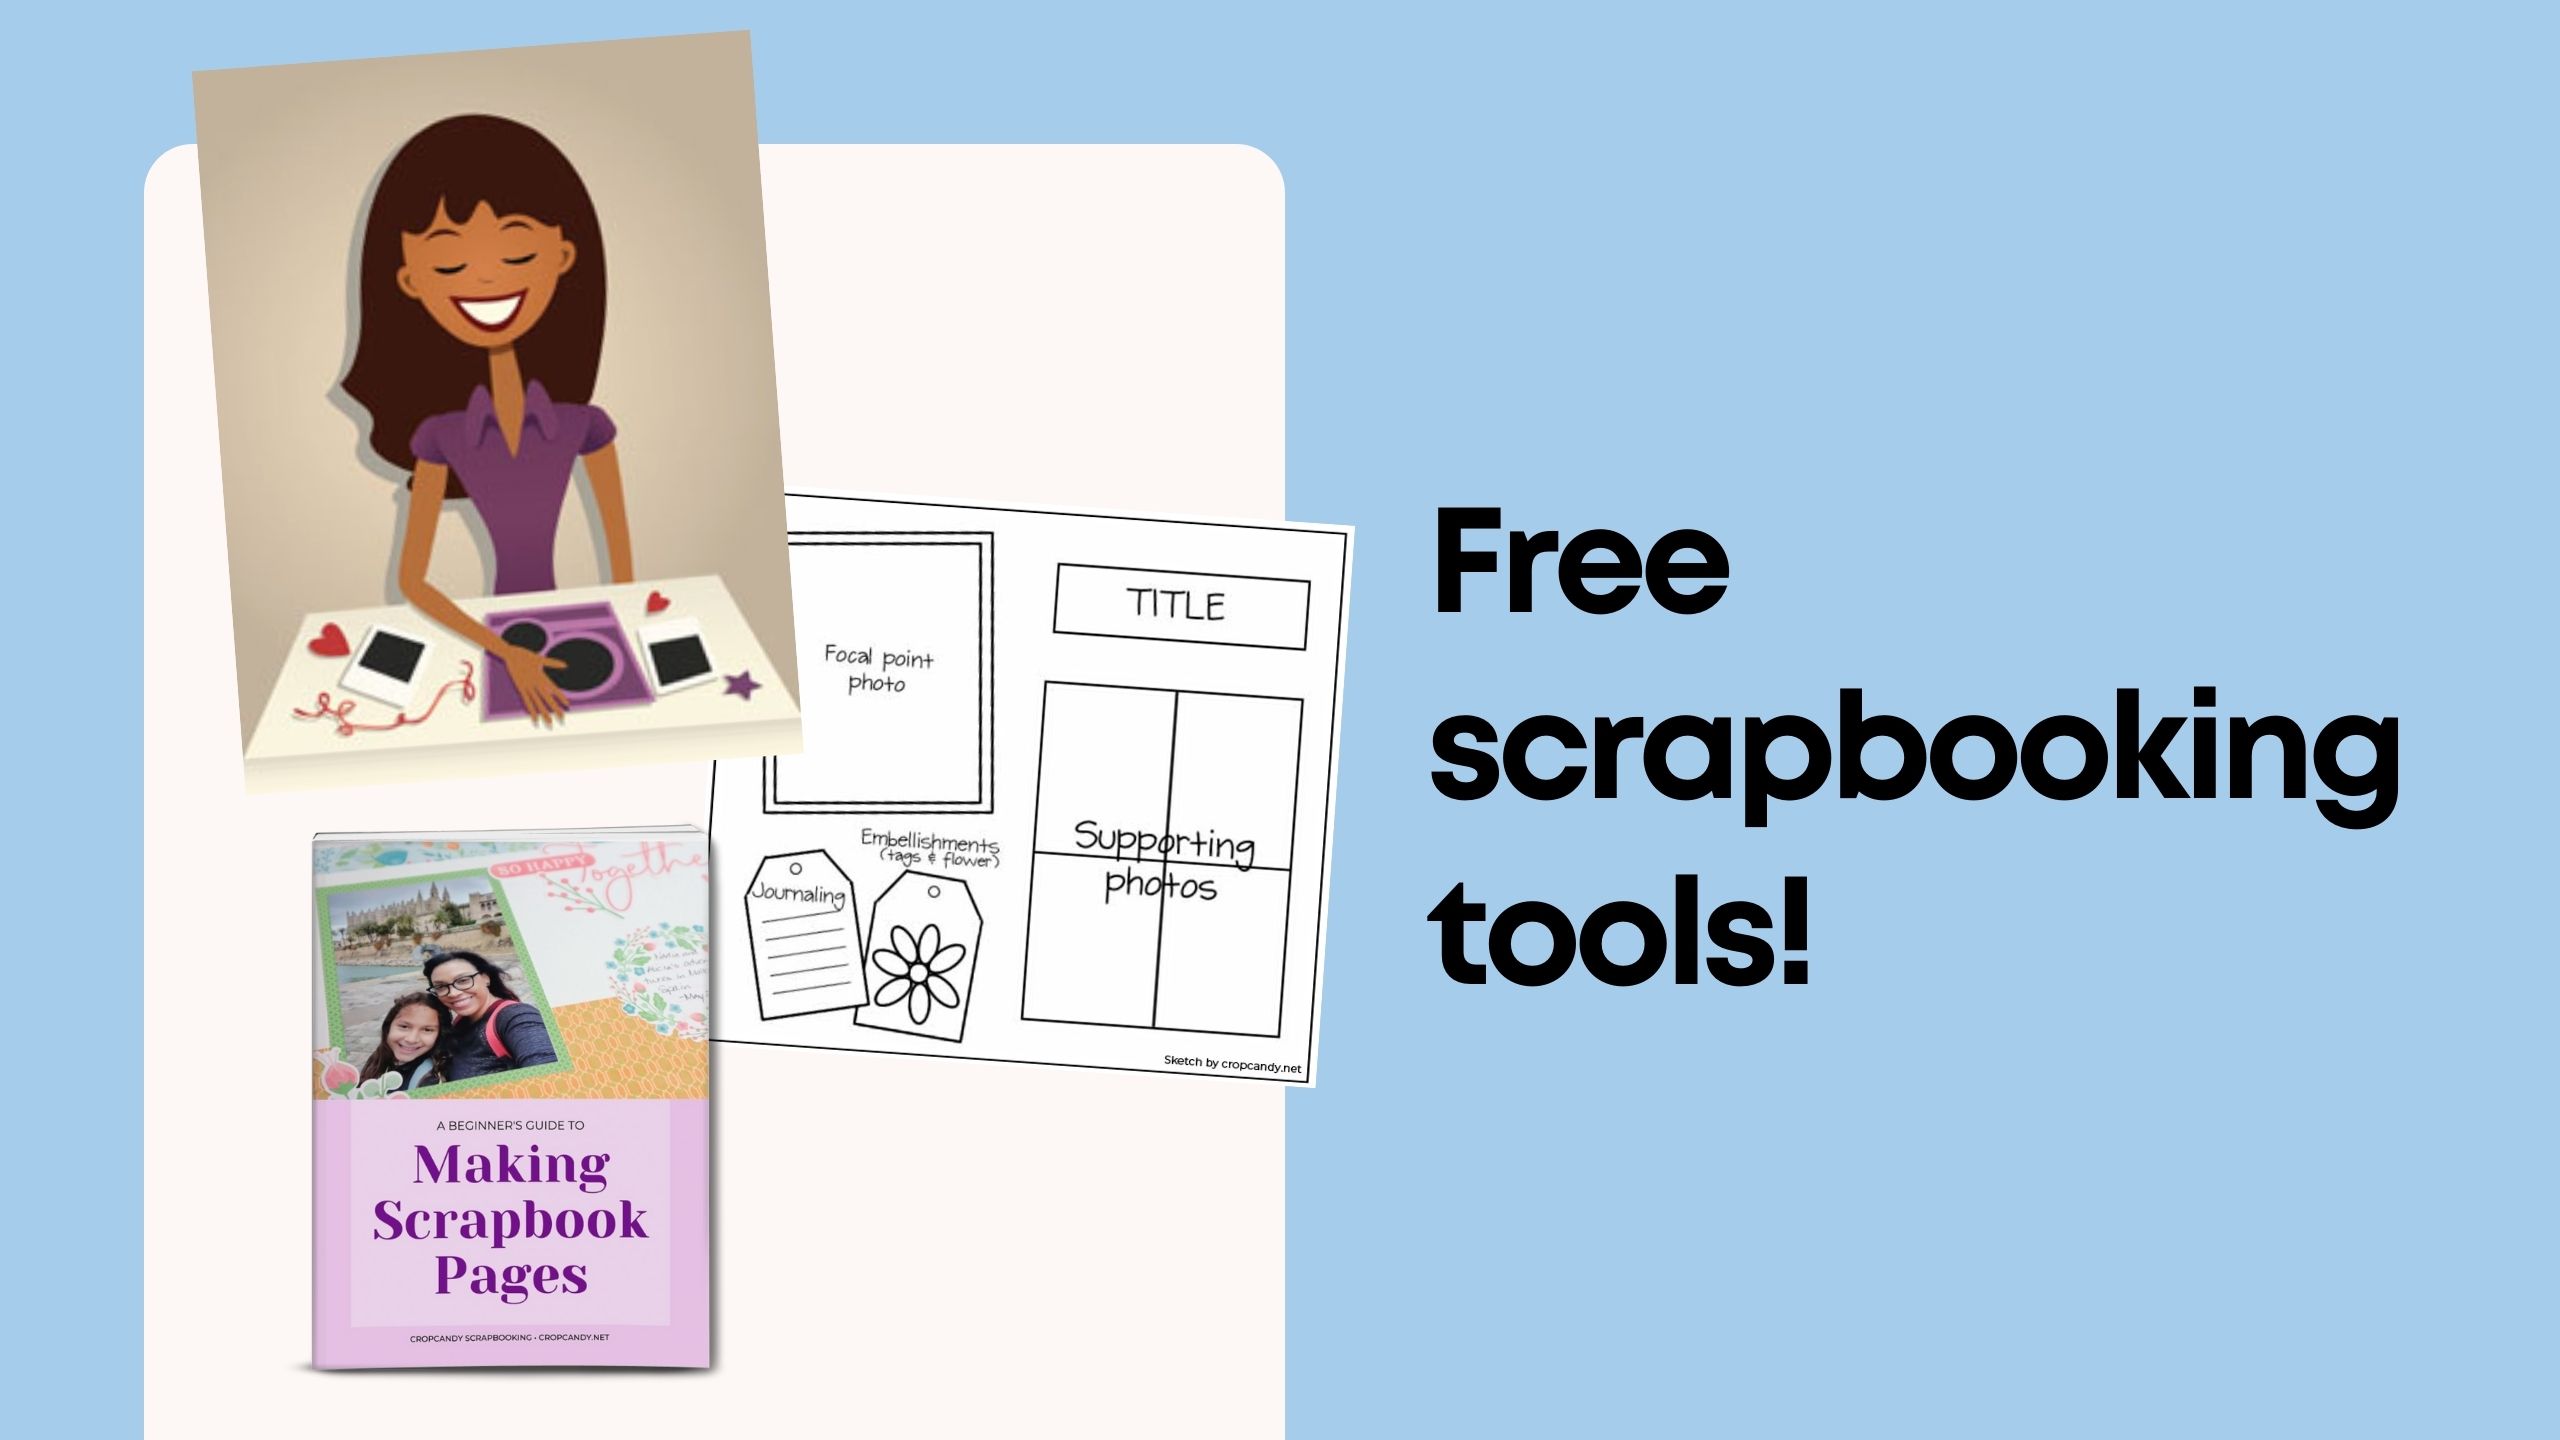 Free scrapbooking tools from The Scrapbook School